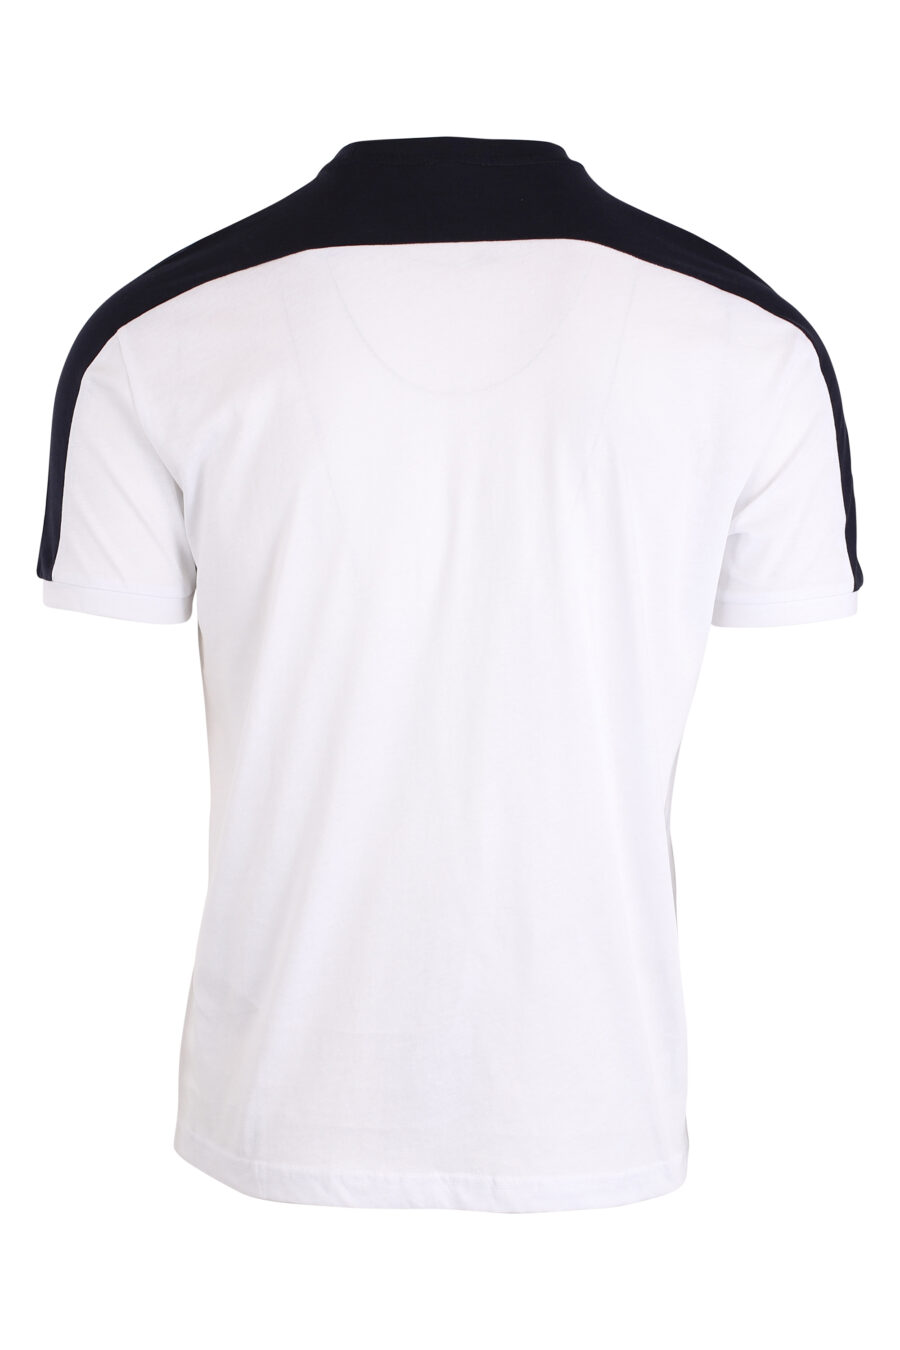 Zweifarbiges weißes T-Shirt und Maxilogo "lux identity" - IMG 4199